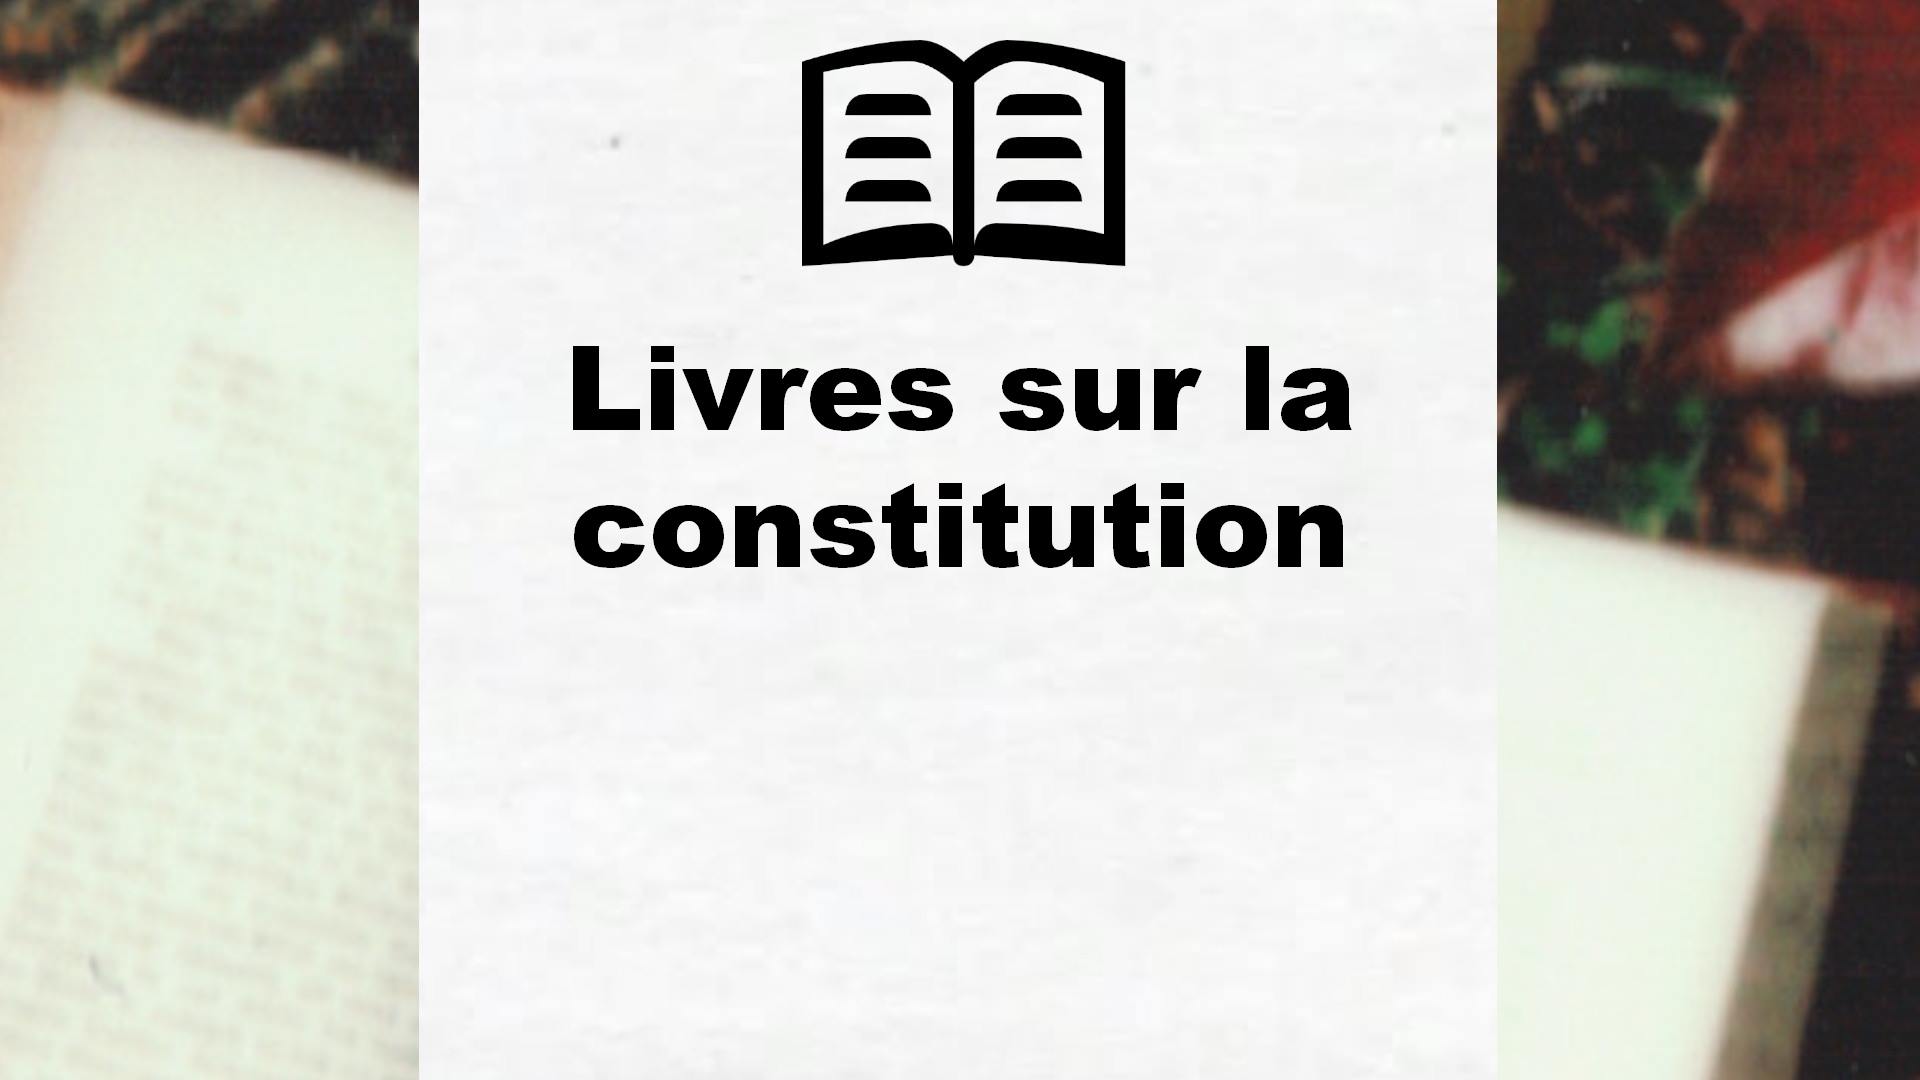 Livres sur la constitution